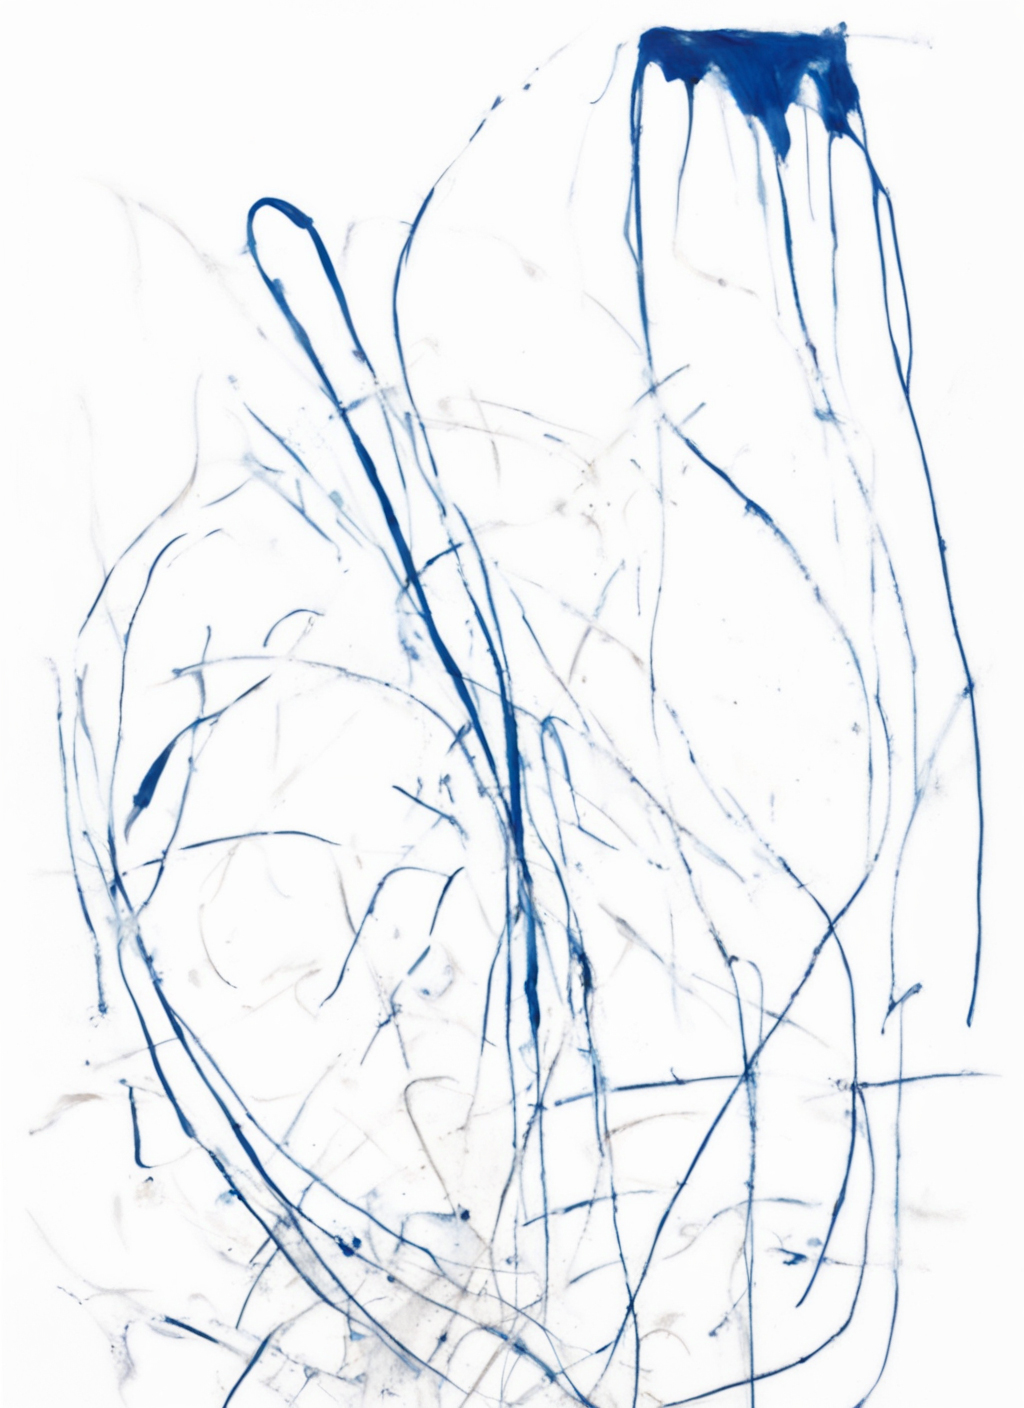 Image abstraite d'illustration pour le programme de résidence Bifurcations #2 présentant des lignes bleues dessinant une sorte de cartographie